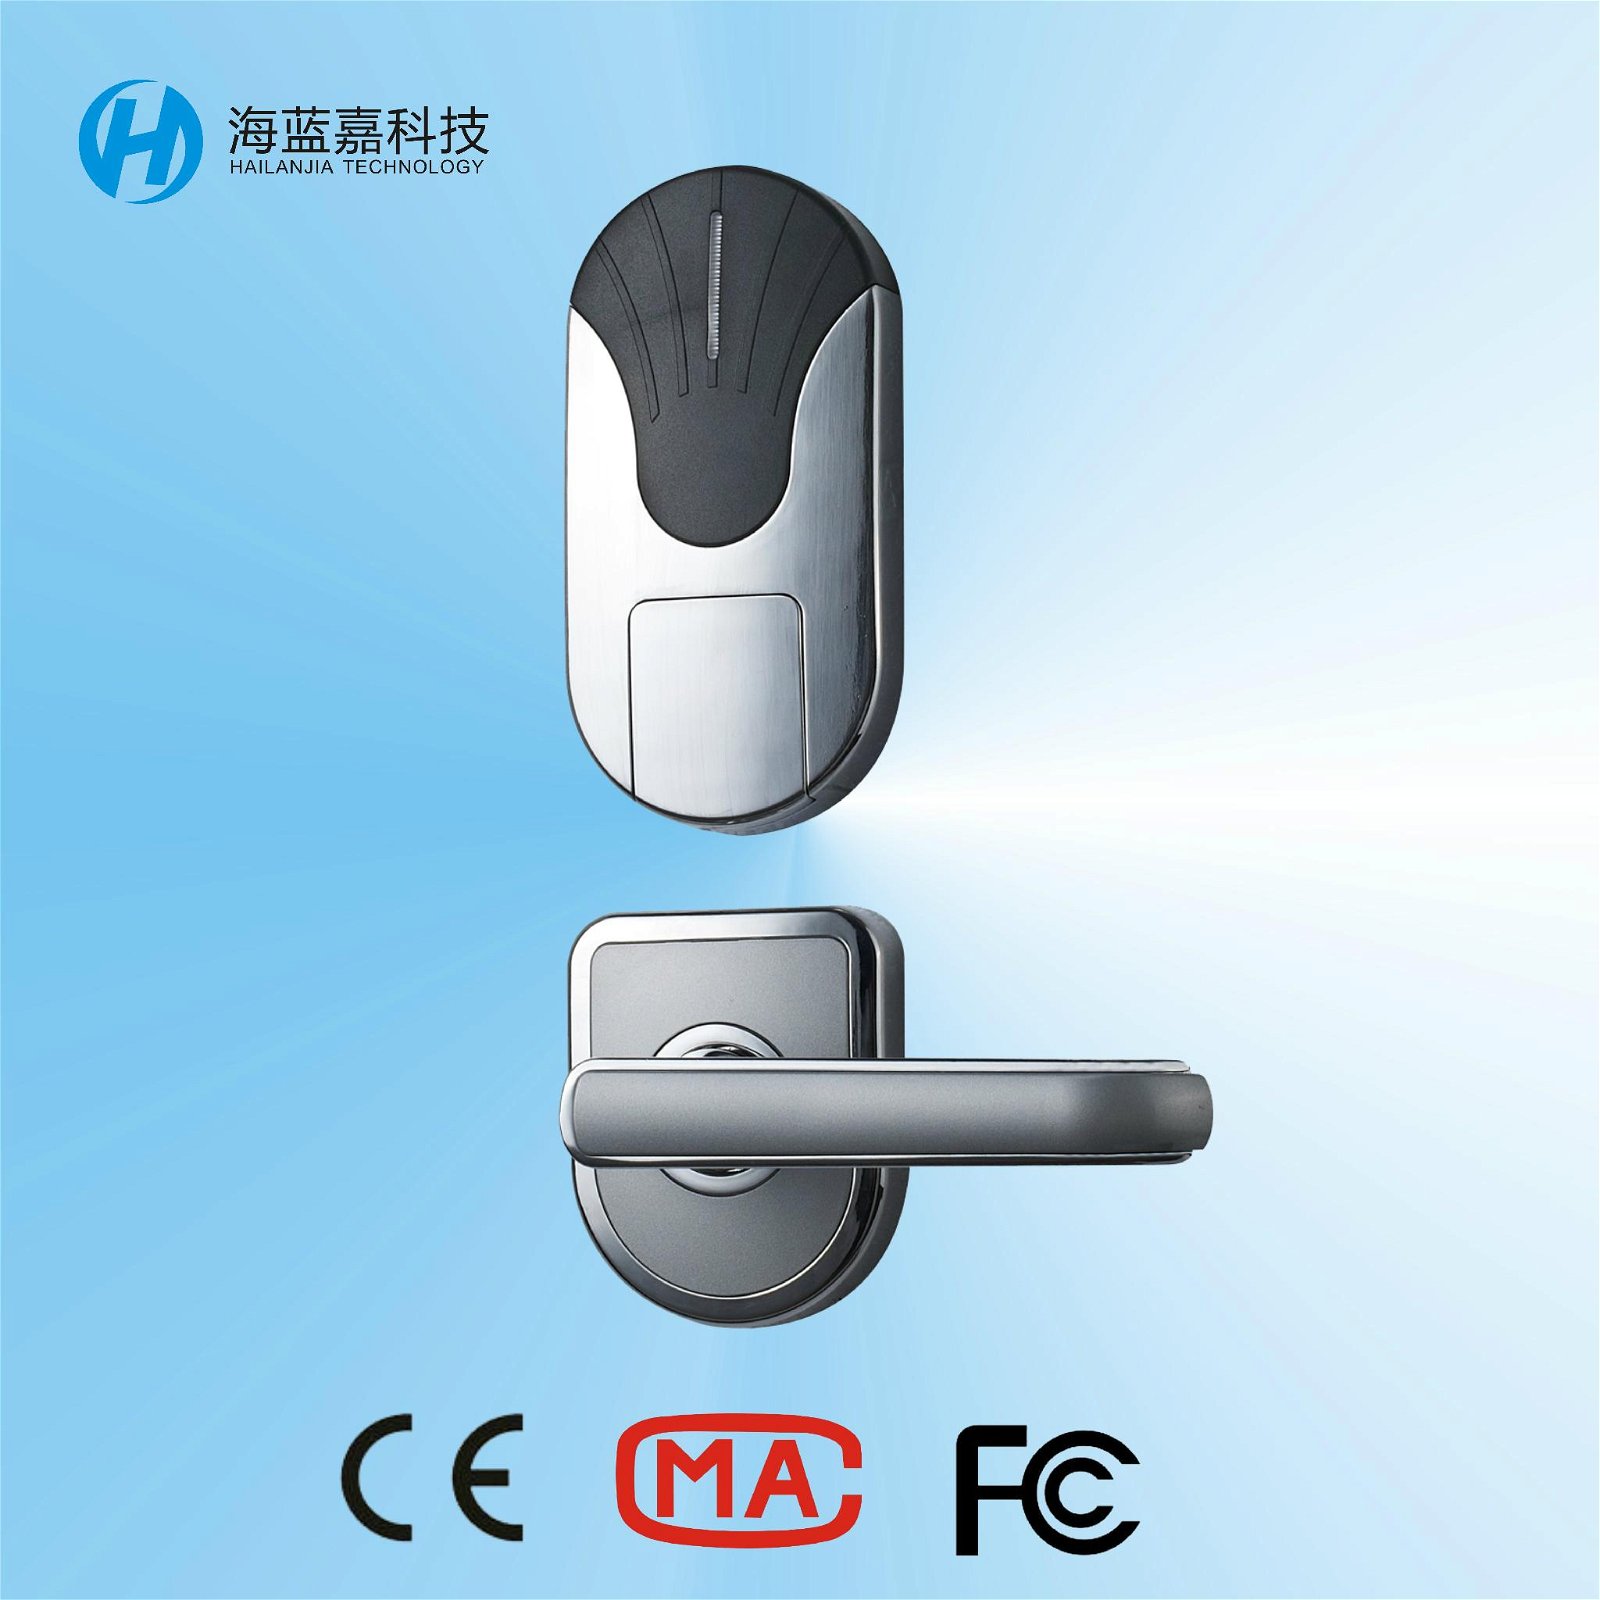 Hailanjia Technology electronic key card door locks